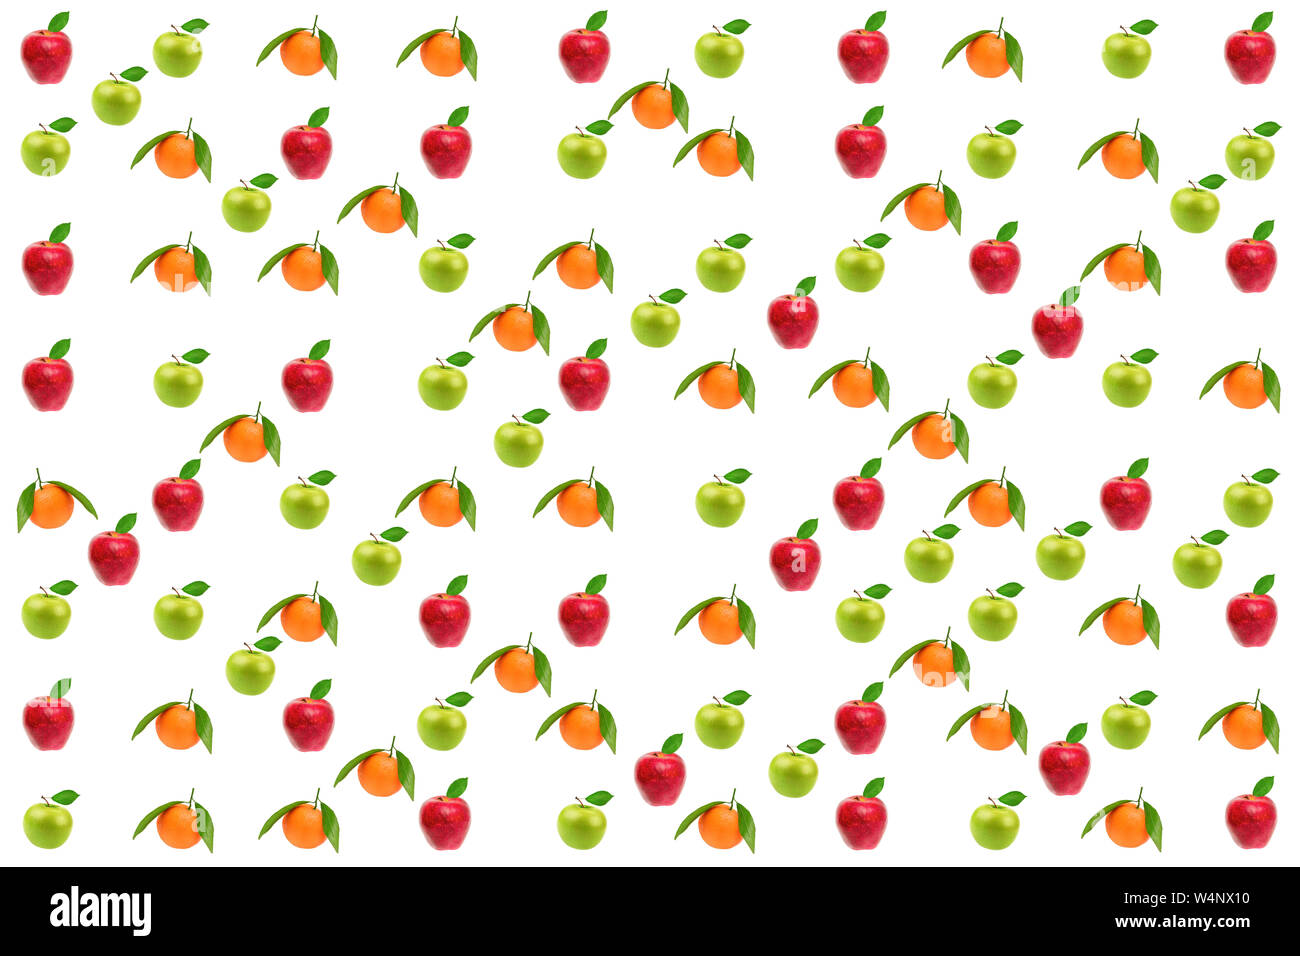 Motif Fruits. Des pommes et des oranges fraîches isolées sur fond blanc. Banque D'Images